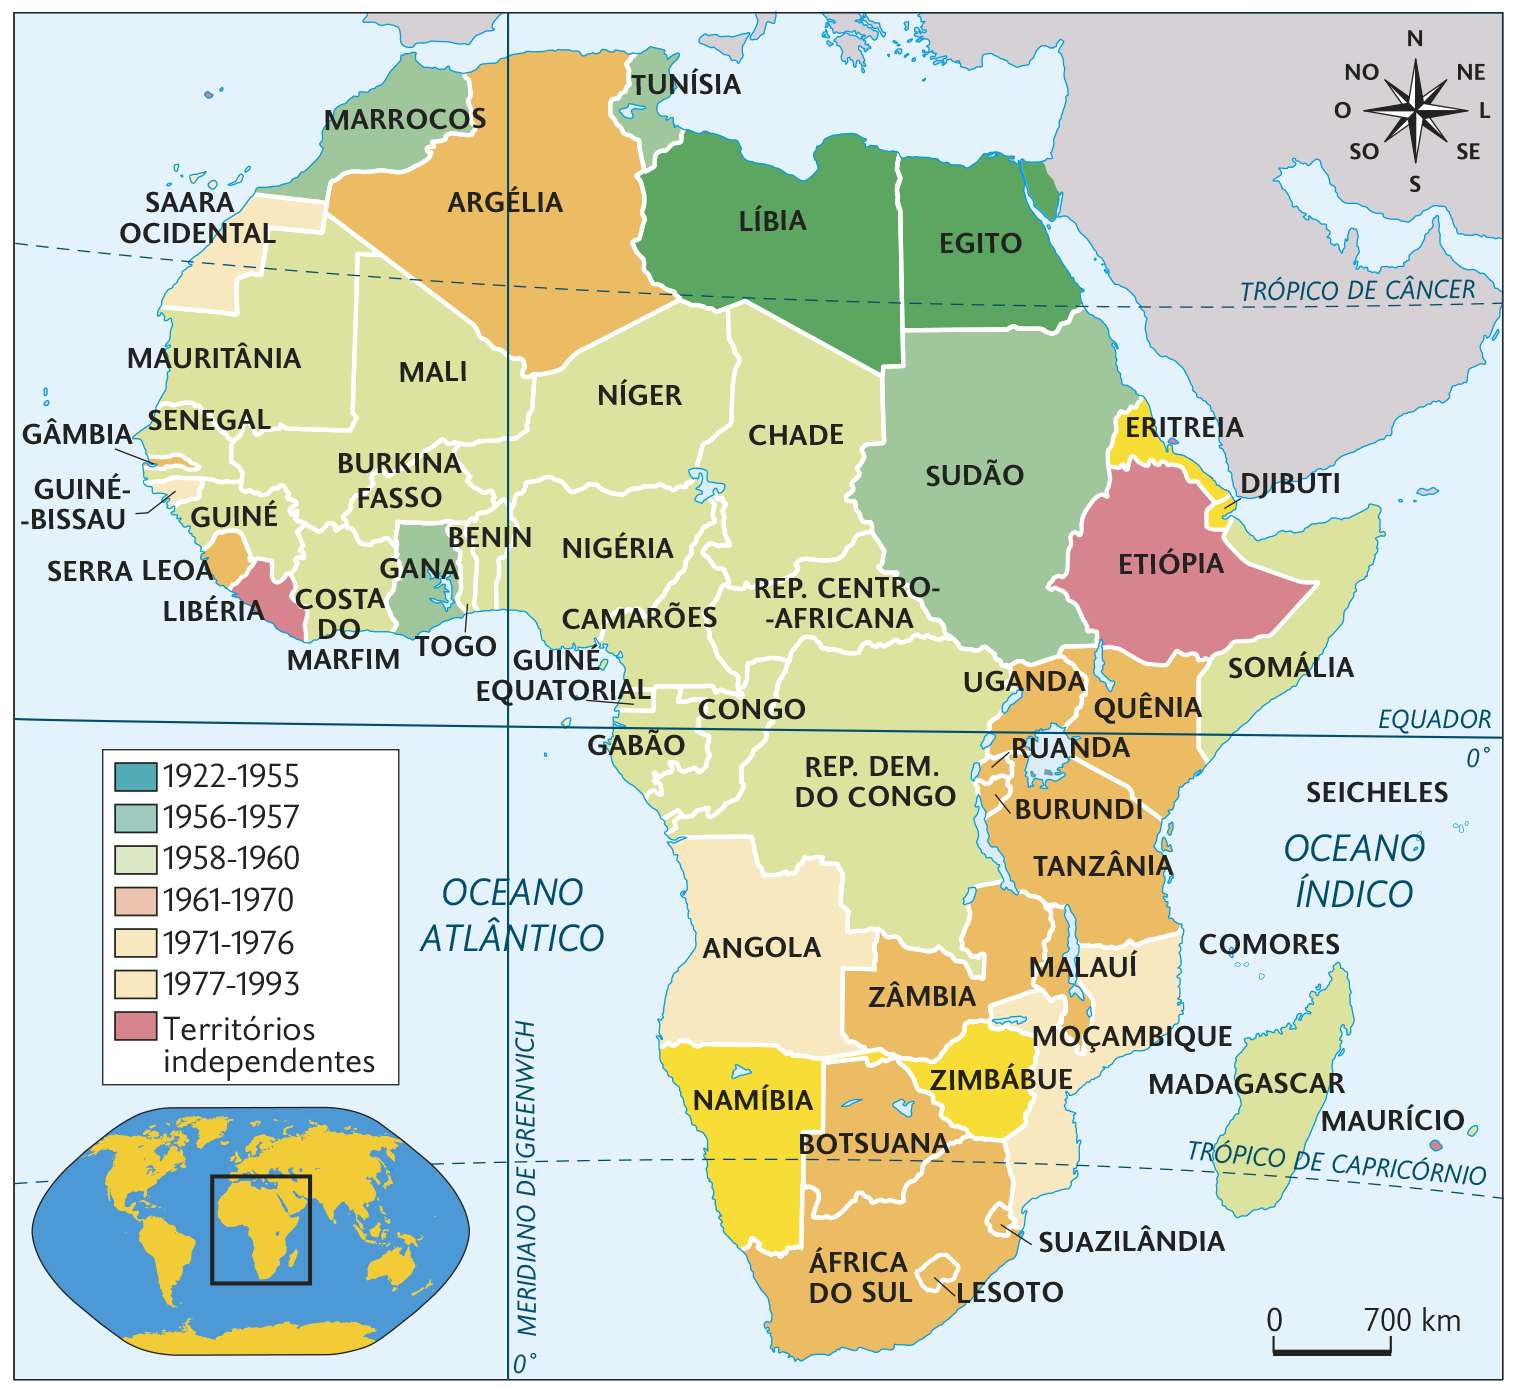 Mapa. As independências na África (século 20). Mapa territorial destacando as independências conforme legenda: 1922-1955: LÍBIA e EGITO. 1956-1957: TUNÍSIA, MARROCOS, GANA e SUDÃO 1958-1960: MAURITÂNIA, SENEGAL, GUINÉ, MALI, BURKINA FASSO, COSTA DO MARFIM, TOGO, BENIN, NÍGER, NIGÉRIA, CAMARÕES, CHADE, REPULPLICA CENTRO-AFRICANA, GUINÉ EQUATORIAL, CONGO, GABÃO, REP. DEM. DO CONGO, SOMÁLIA e MADAGASCAR. 1961-1970: ARGÉLIA, GÂMBIA, SERRA LEOA, UGANDA, QUÊNIA, RUANDA, BURUNDI, TANZÂNIA, MALAUÍ, ZÂMBIA, BOTSUANA, ÁFRICA DO SUL, LESOTO e SUAZILÂNDIA. 1971-1976: SAARA OCIDENTAL, GUINÉ-BISSAU, ANGOLA e MOÇAMBIQUE. 1977-1993: NAMÍBIA, ZIMBÁBUE, ERITREIA e DJIBUTI. Territórios independentes: MAURÍCIO, ETIÓPIA e LIBÉRIA. No canto inferior, à esquerda, planisfério destacando a África e parte da Ásia e Europa. Seguido, representação da rosa dos ventos e escala de 700 quilômetros por centímetro.